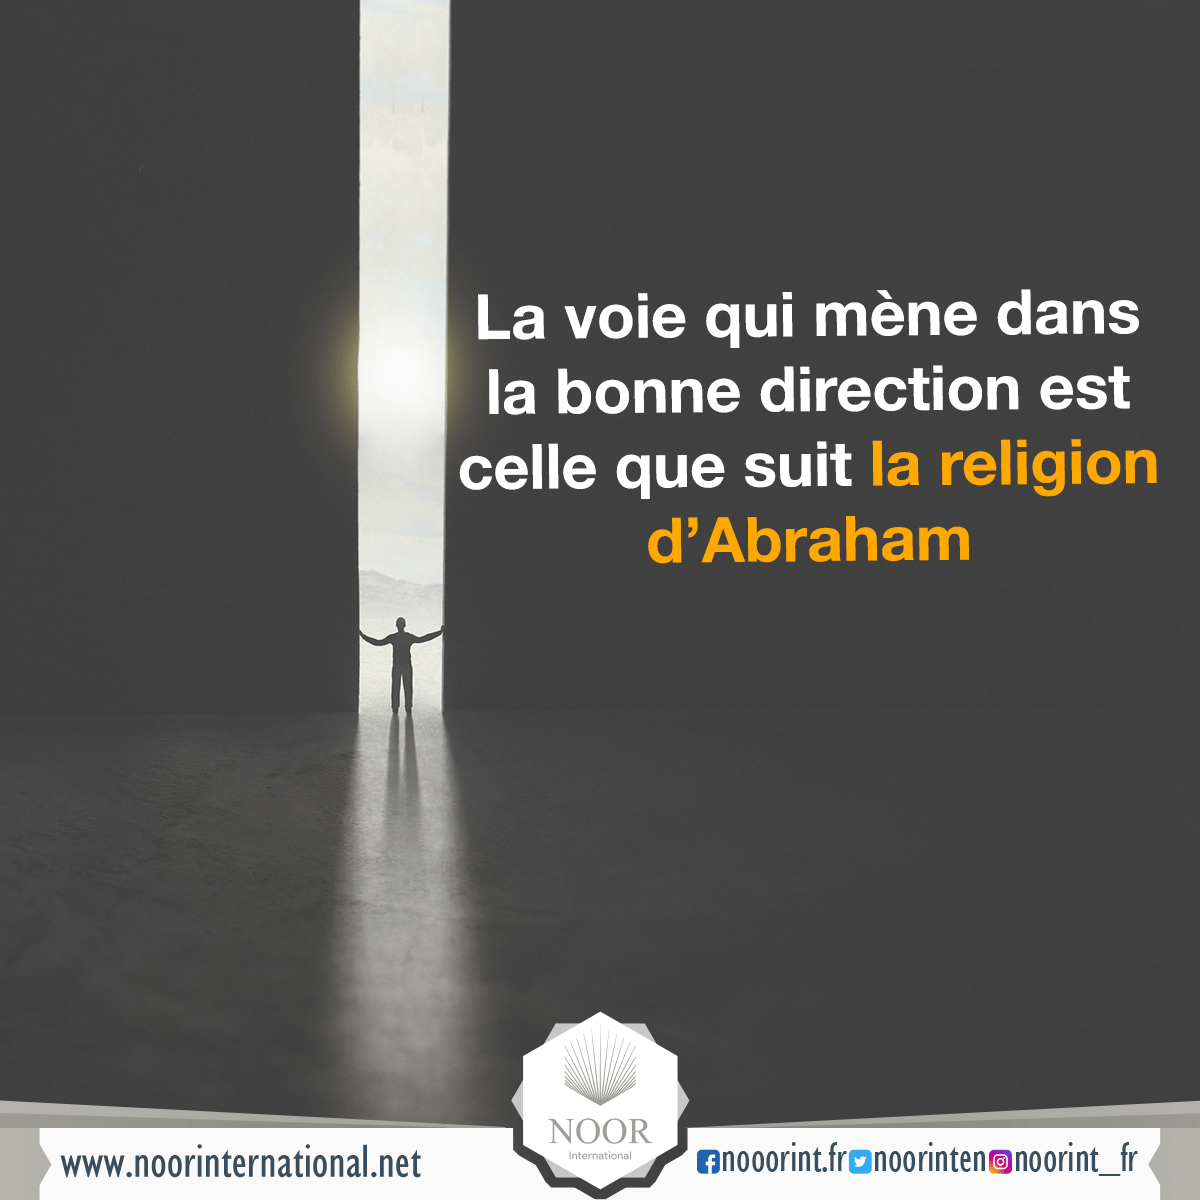 La voie qui mène dans la bonne direction est celle que suit la religion d’Abraham